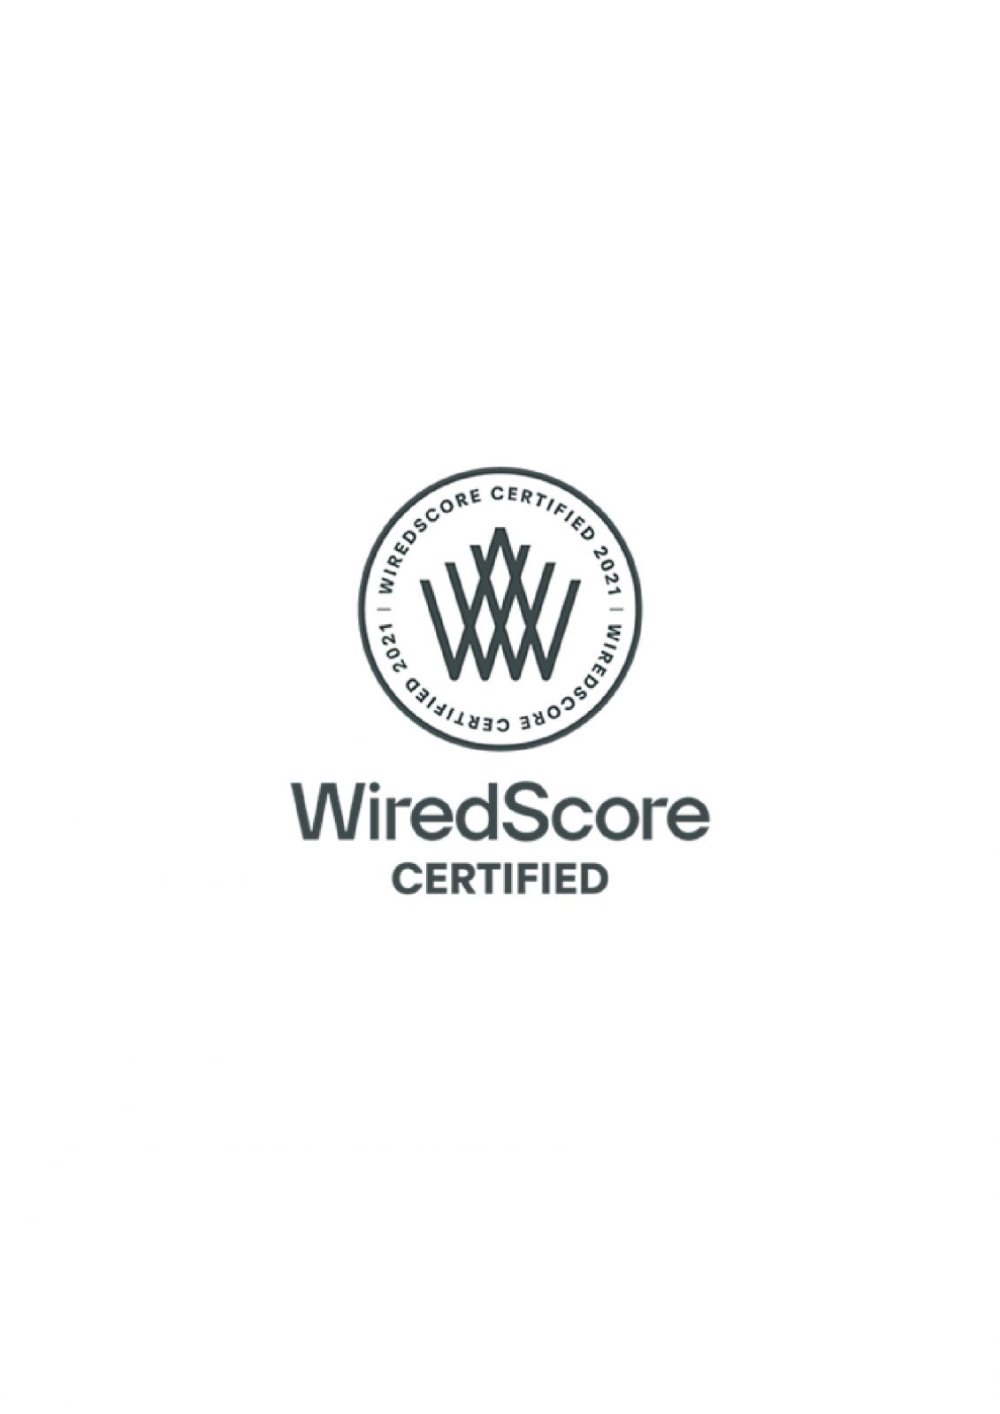 PGI ENGINEERING ya cuenta con la certificación WiredScore para sus clientes